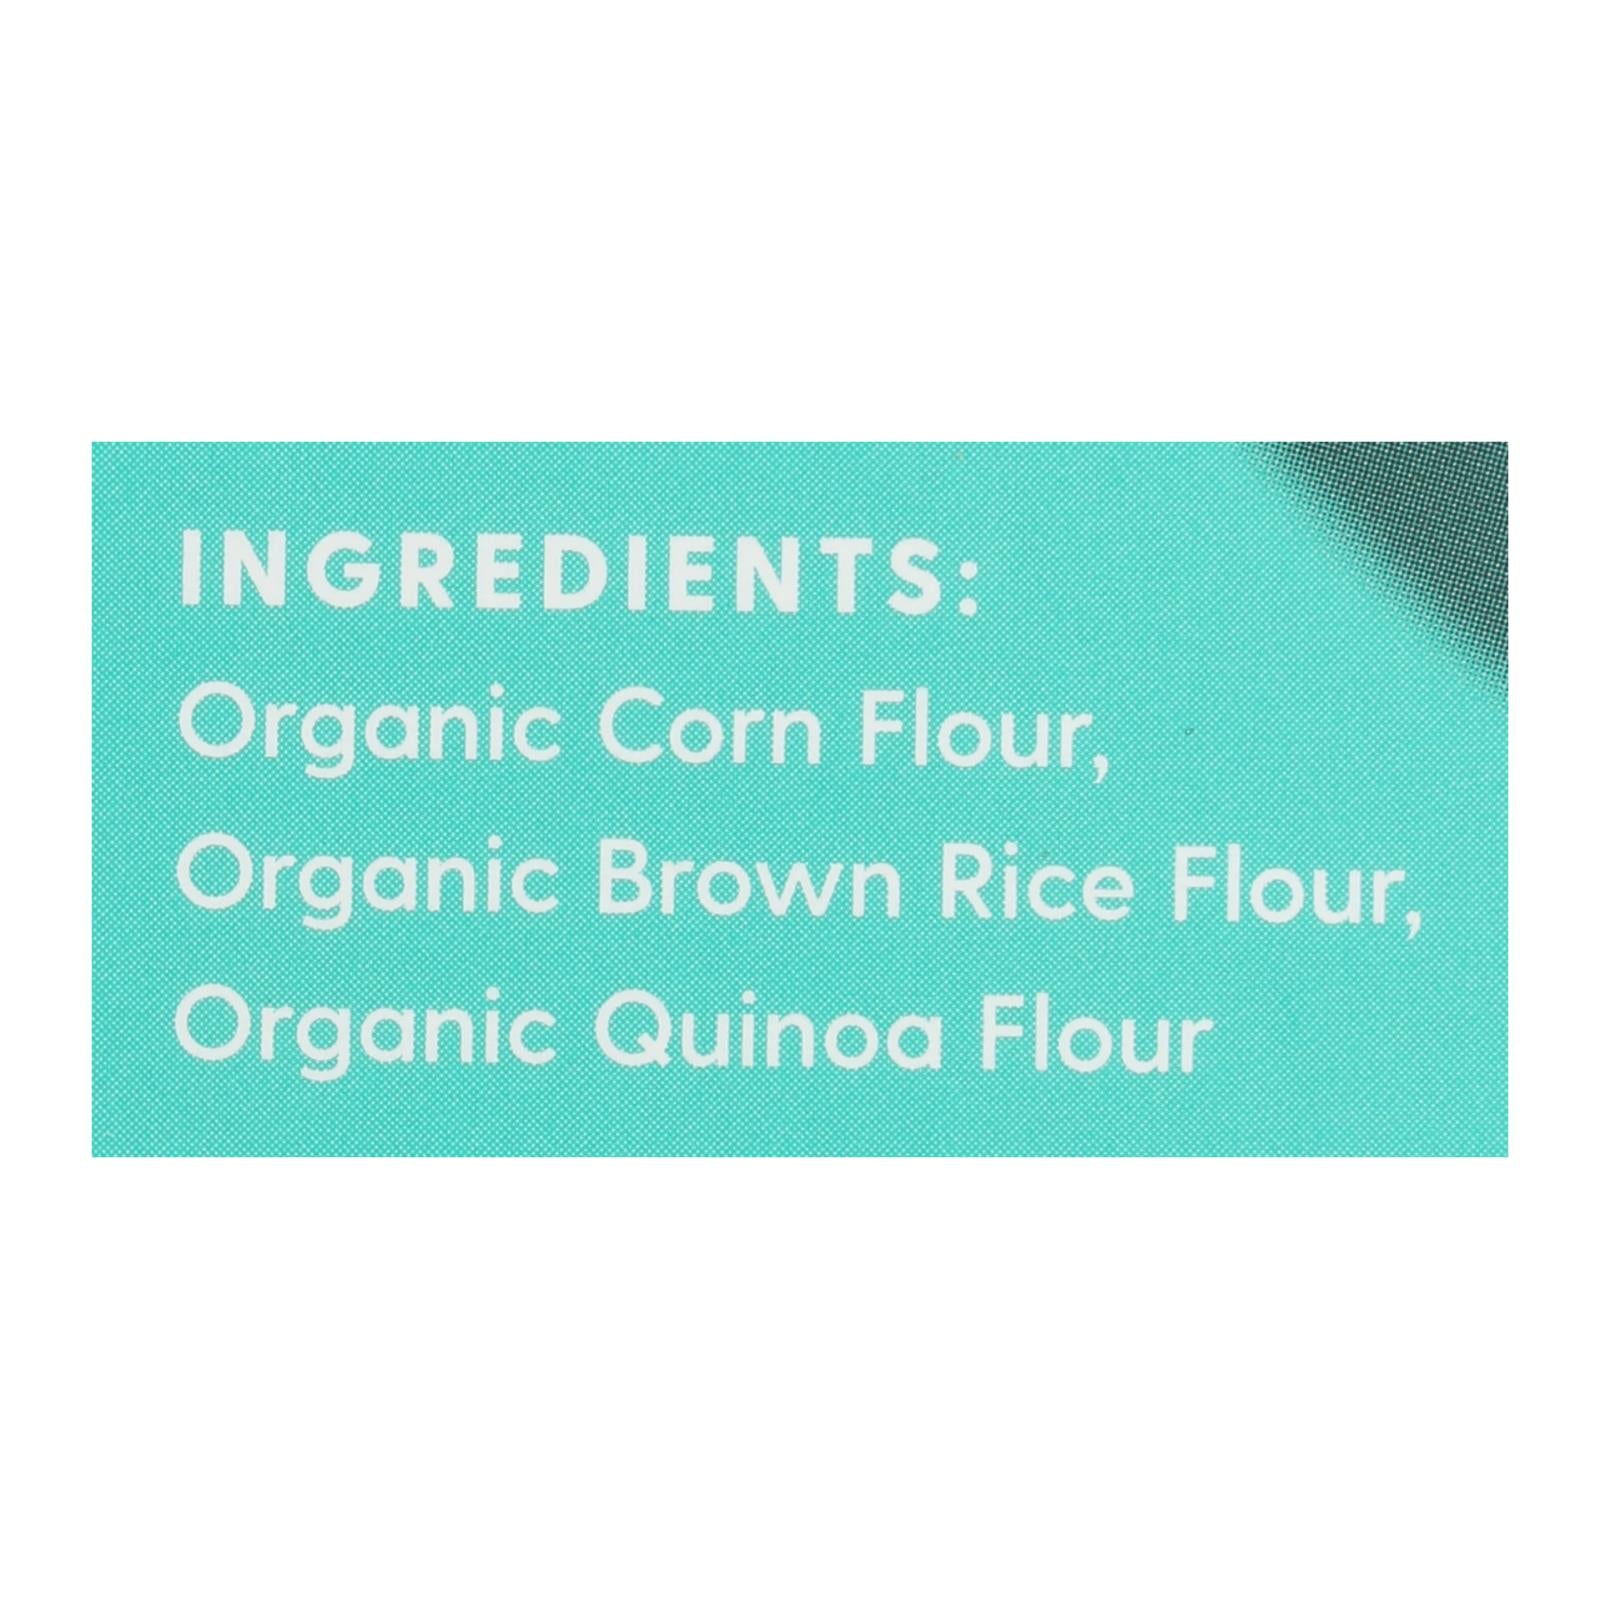 Ancient Harvest Organic Gluten Free Quinoa Supergrain Pasta - Rotelle - Case Of 12 - 8 Oz